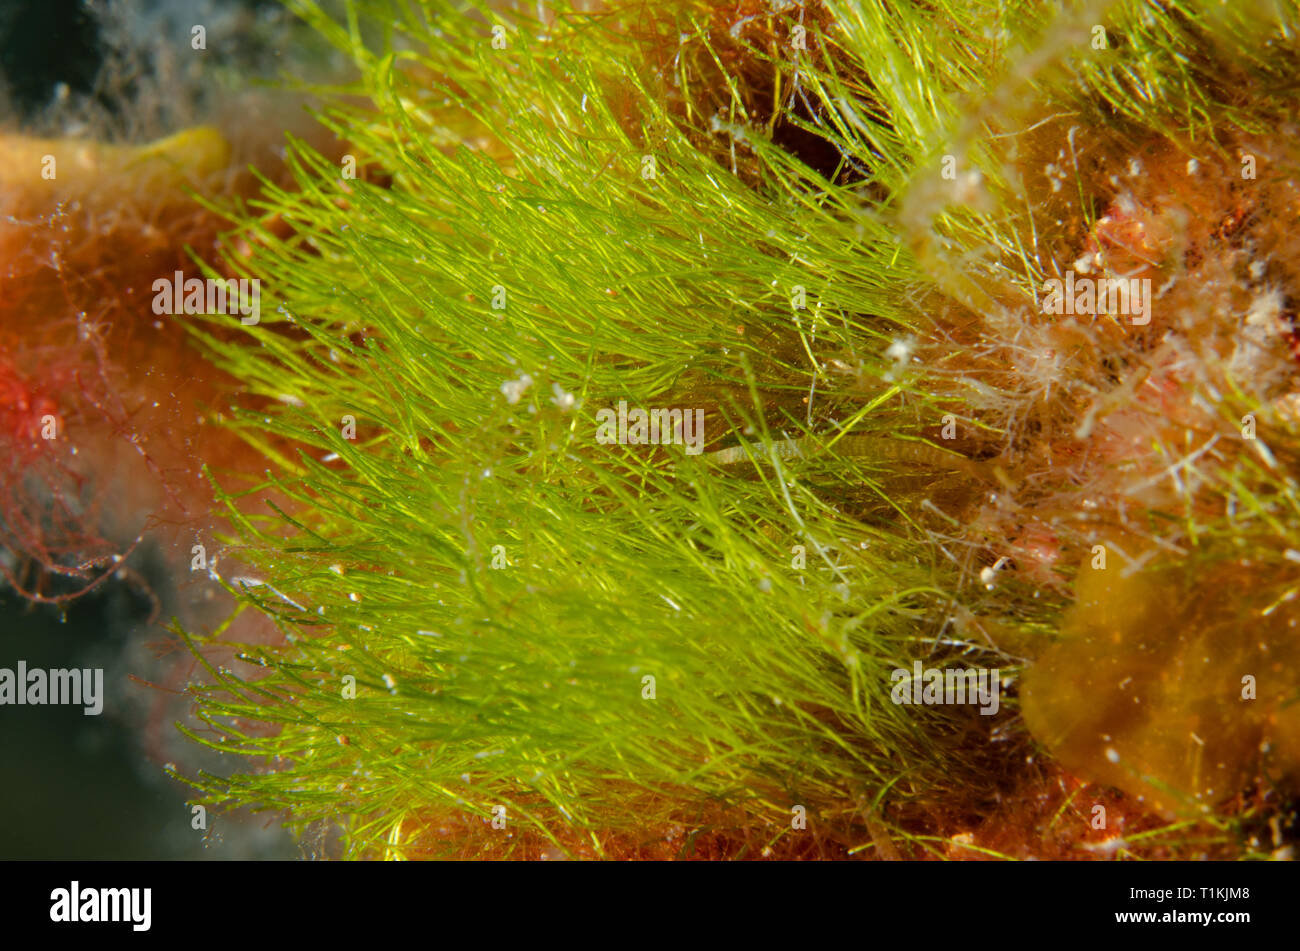 Green alga, Cladophora prolifera, Cladophoraceae, Tor Paterno Marine Protected Area, Rome, Italy, Mediterranean Sea Stock Photo